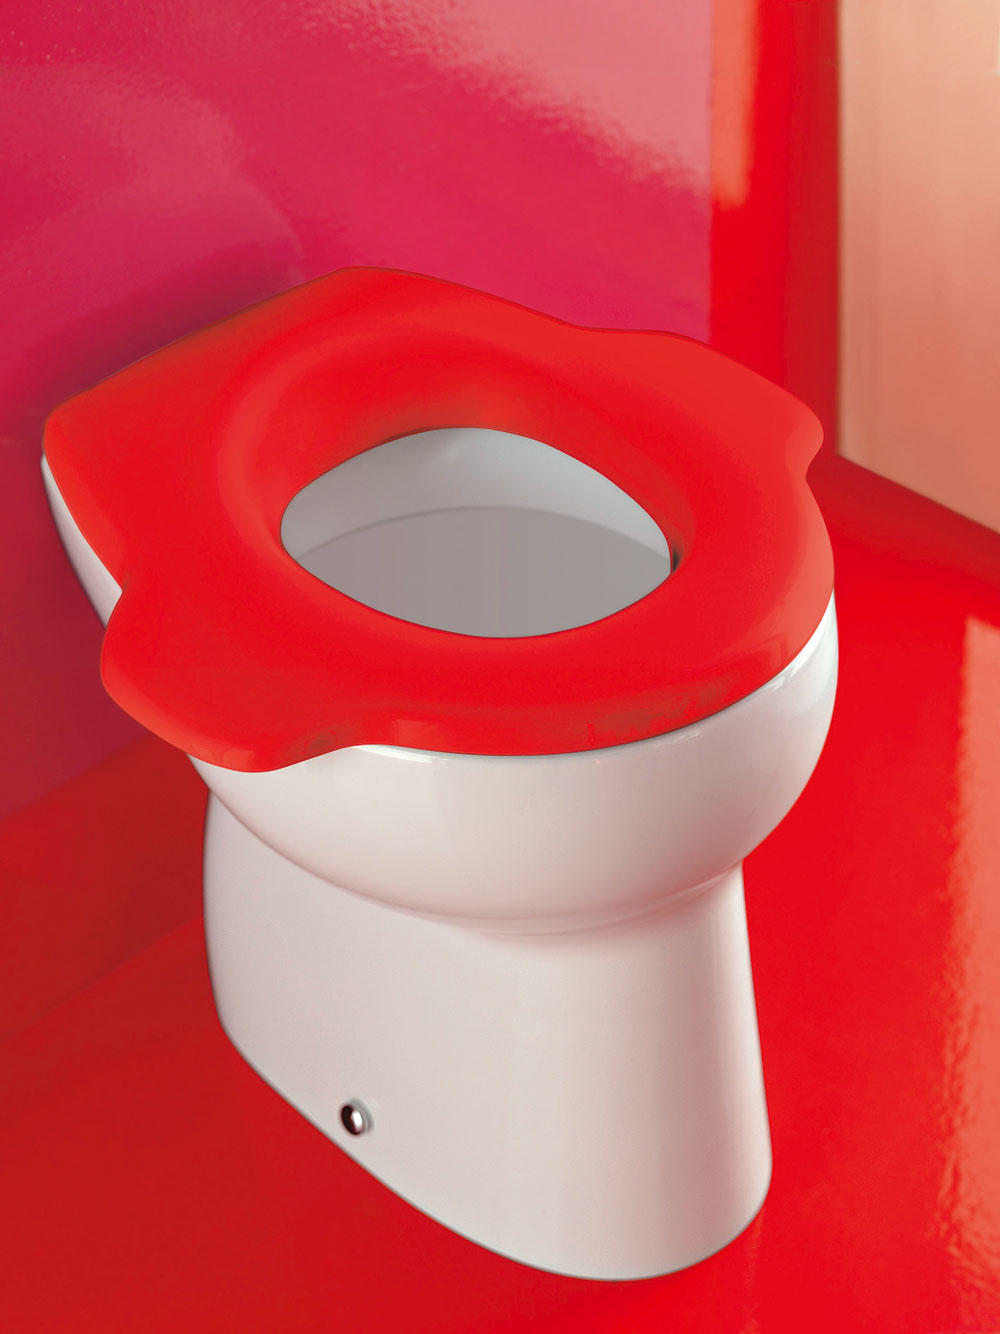 Prechod dieťaťa z nočníka na detský záchod bude určite jednoduchší ako priamo na ten dospelácky. Výrobcovia už ponúkajú rôzne varianty detských záchodových mís. Aj pri menších rozmeroch a hlavne výškach (okolo 30 až 35 cm) umožňujú väčšinou štandardné napojenie na kanalizáciu.